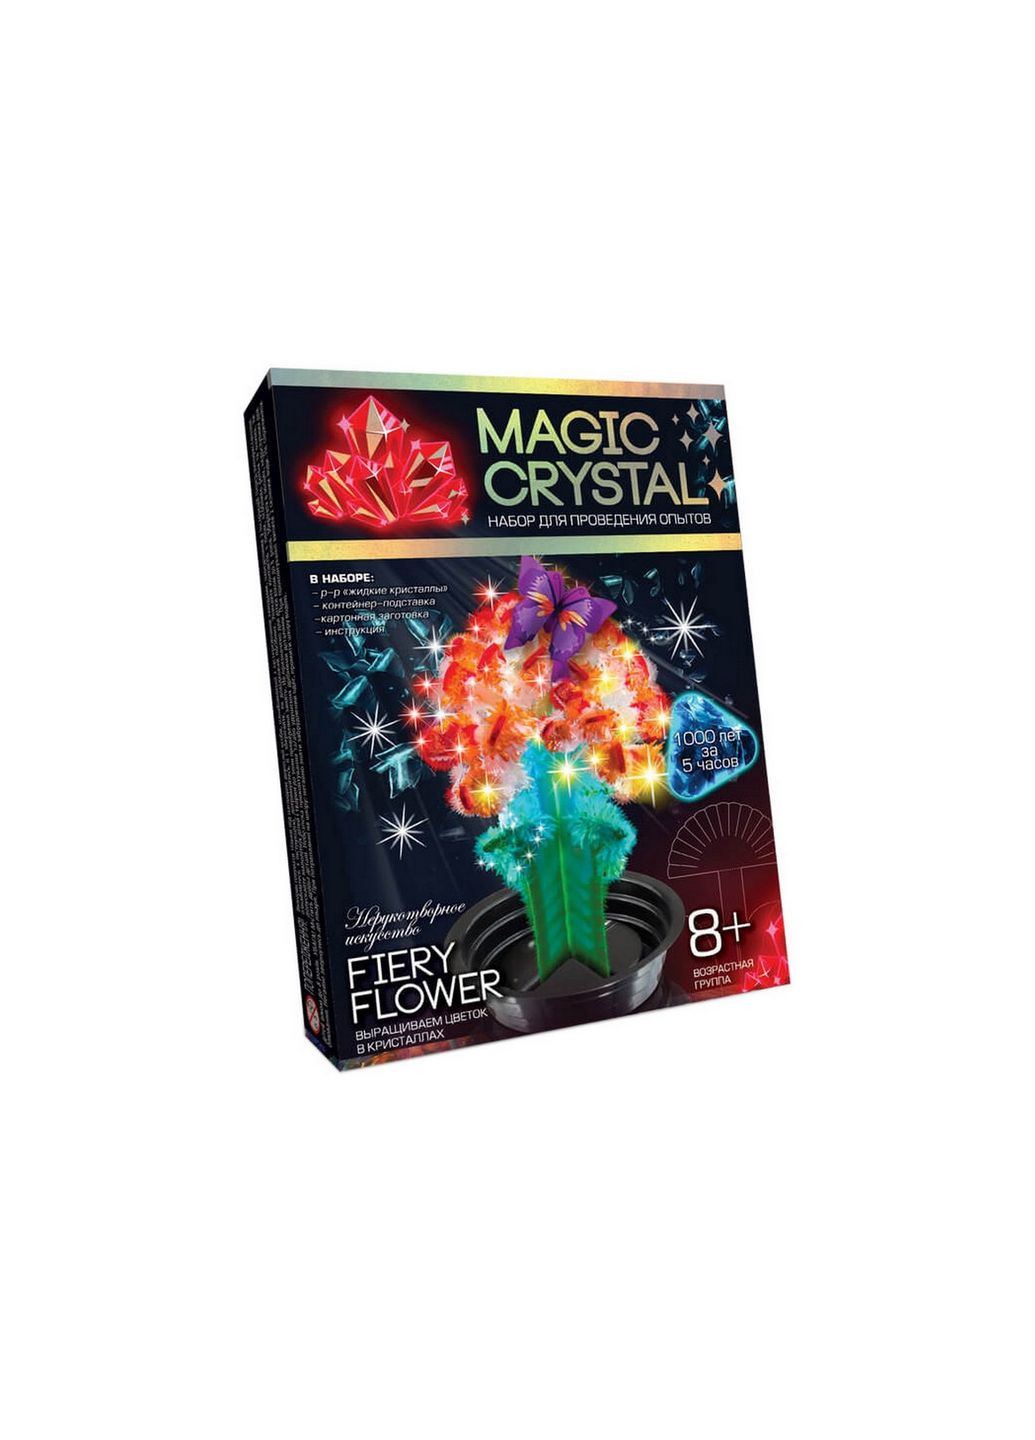 Дитячий набір для проведення дослідів "MAGIC CRYSTAL" ОМС-01 Fiery Flower Danko Toys (280802484)